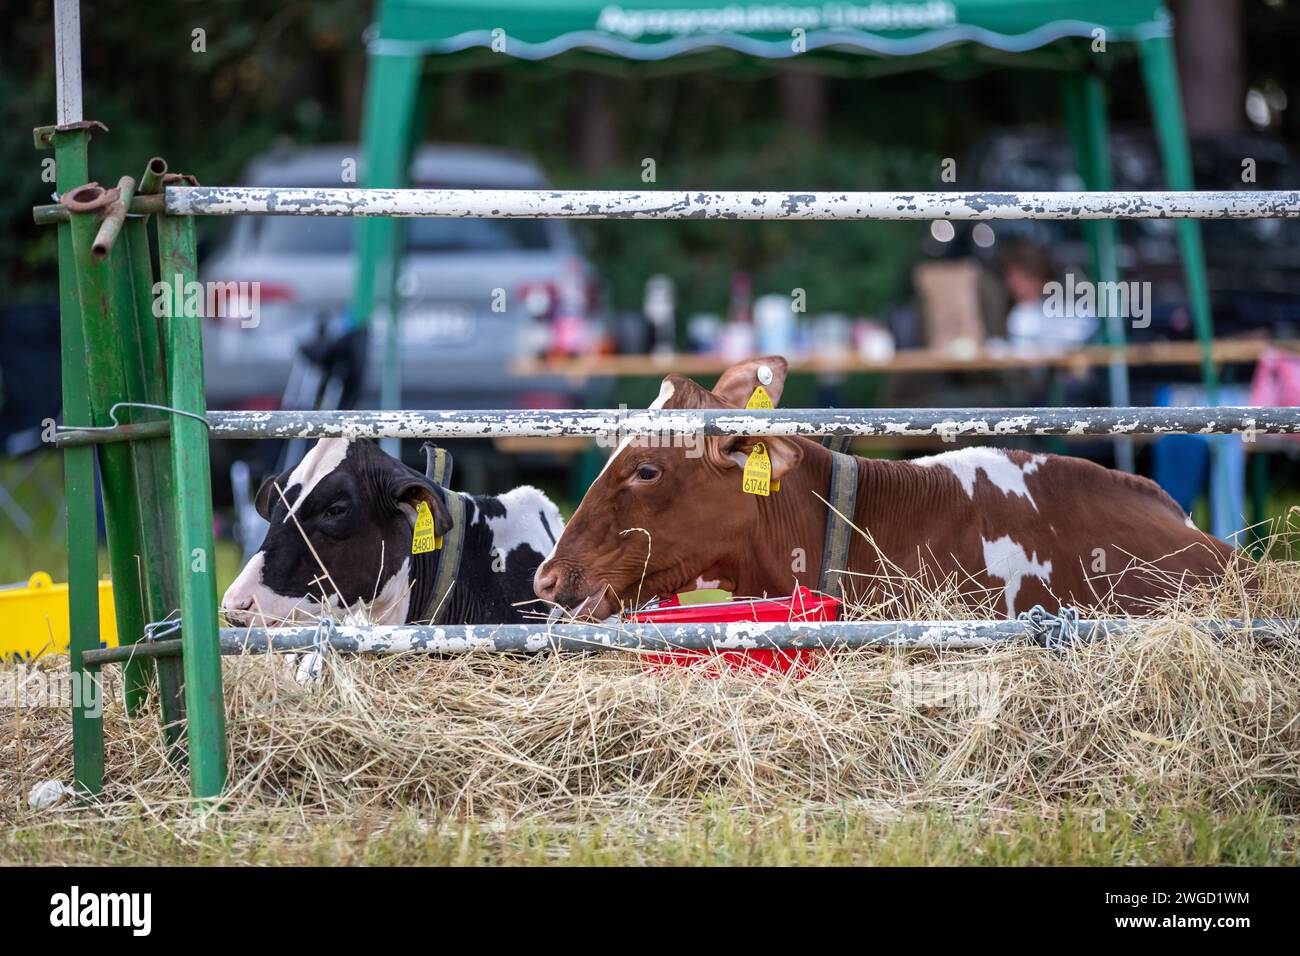 Eine Kuh liegt im Stroh auf dem Bauernhof Banque D'Images